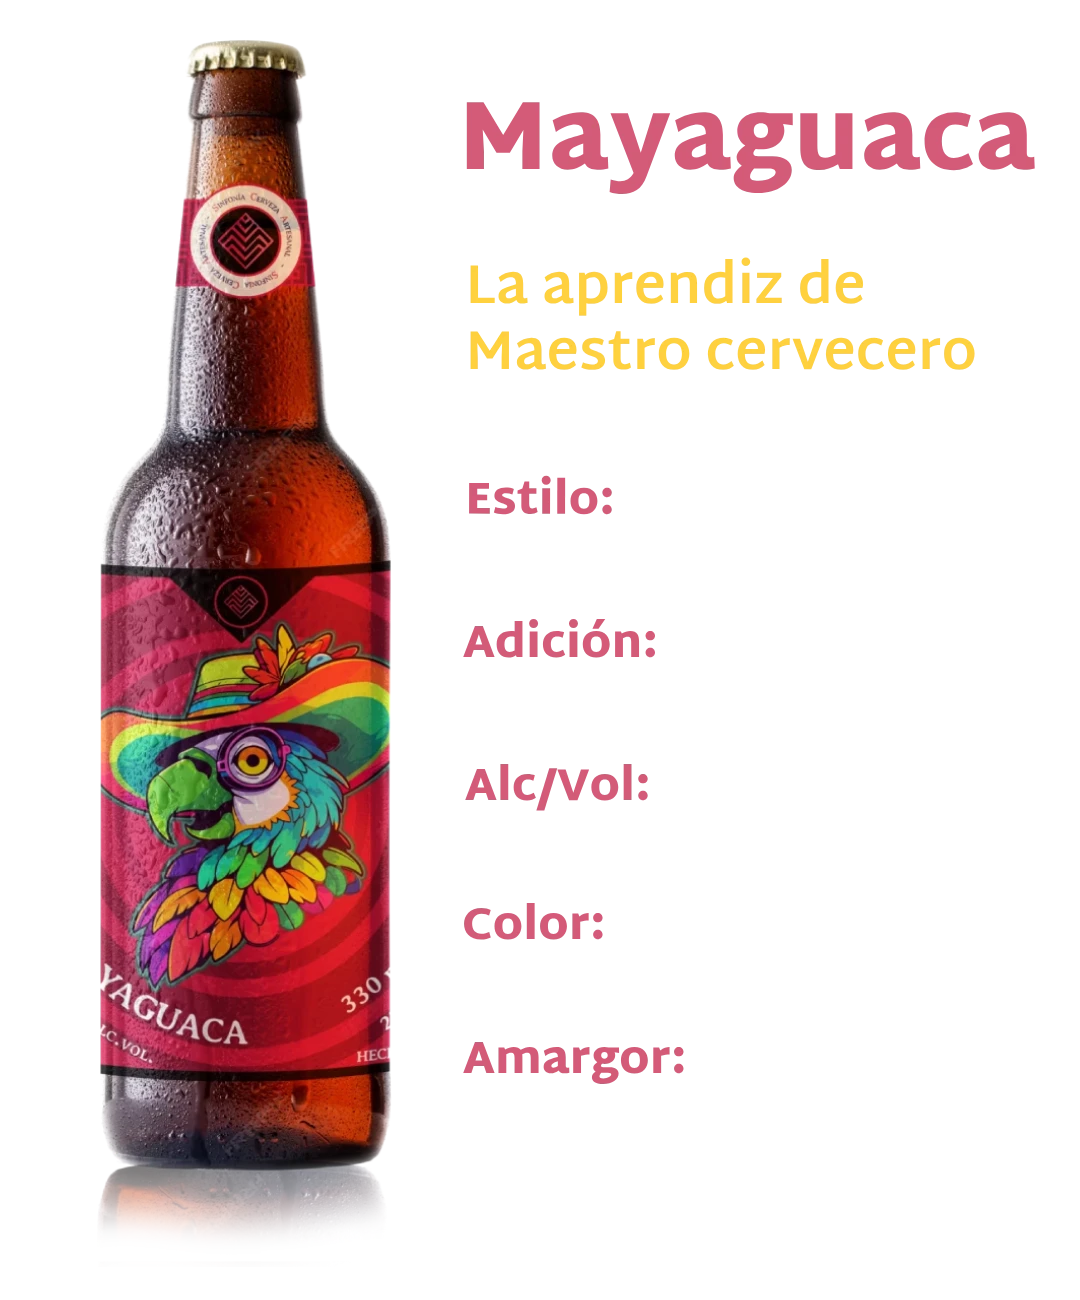 Slide cerveza mayaguaca movil